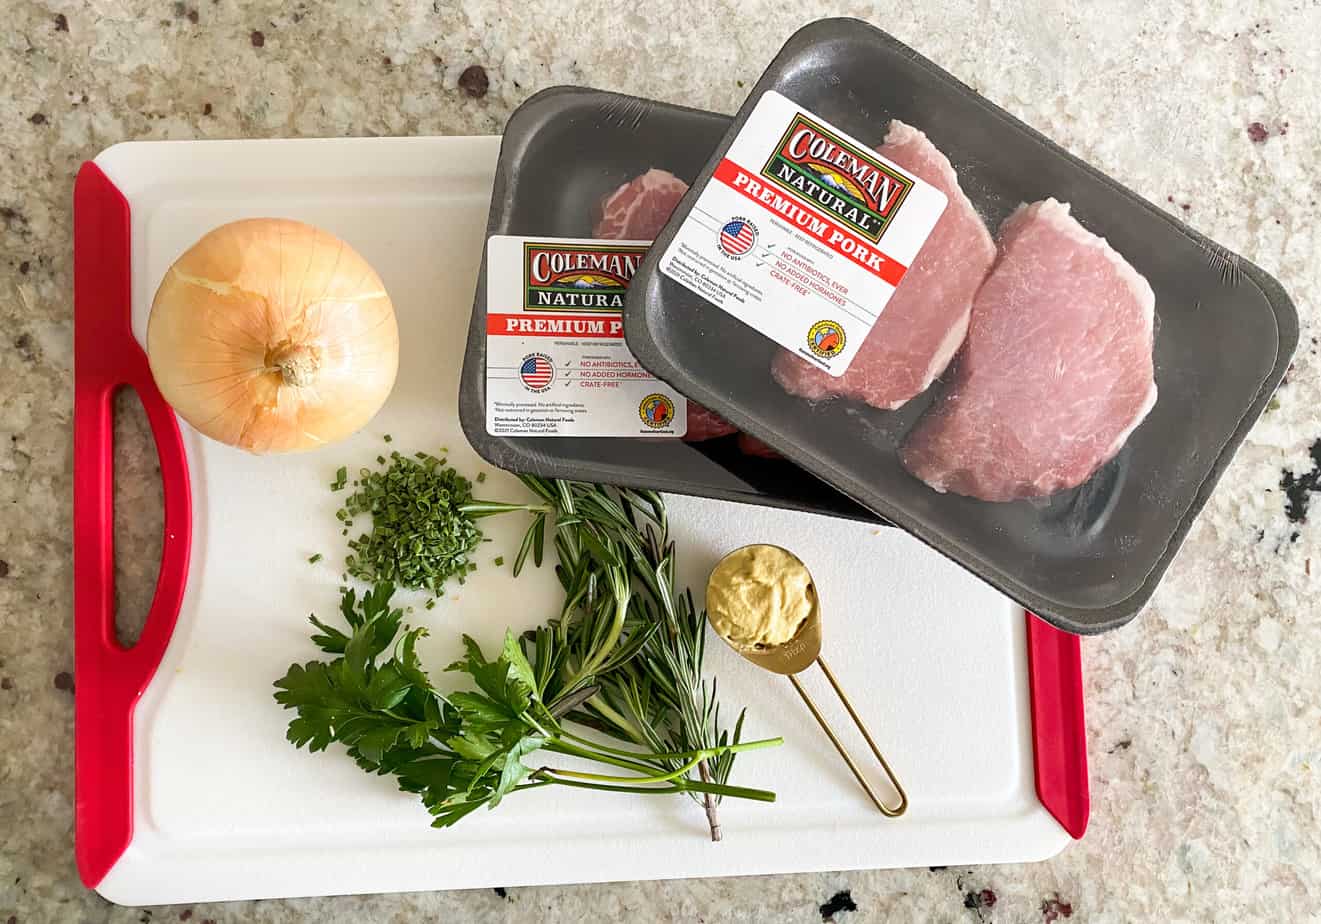 Coleman Natural pork chop with dijon herb sauce